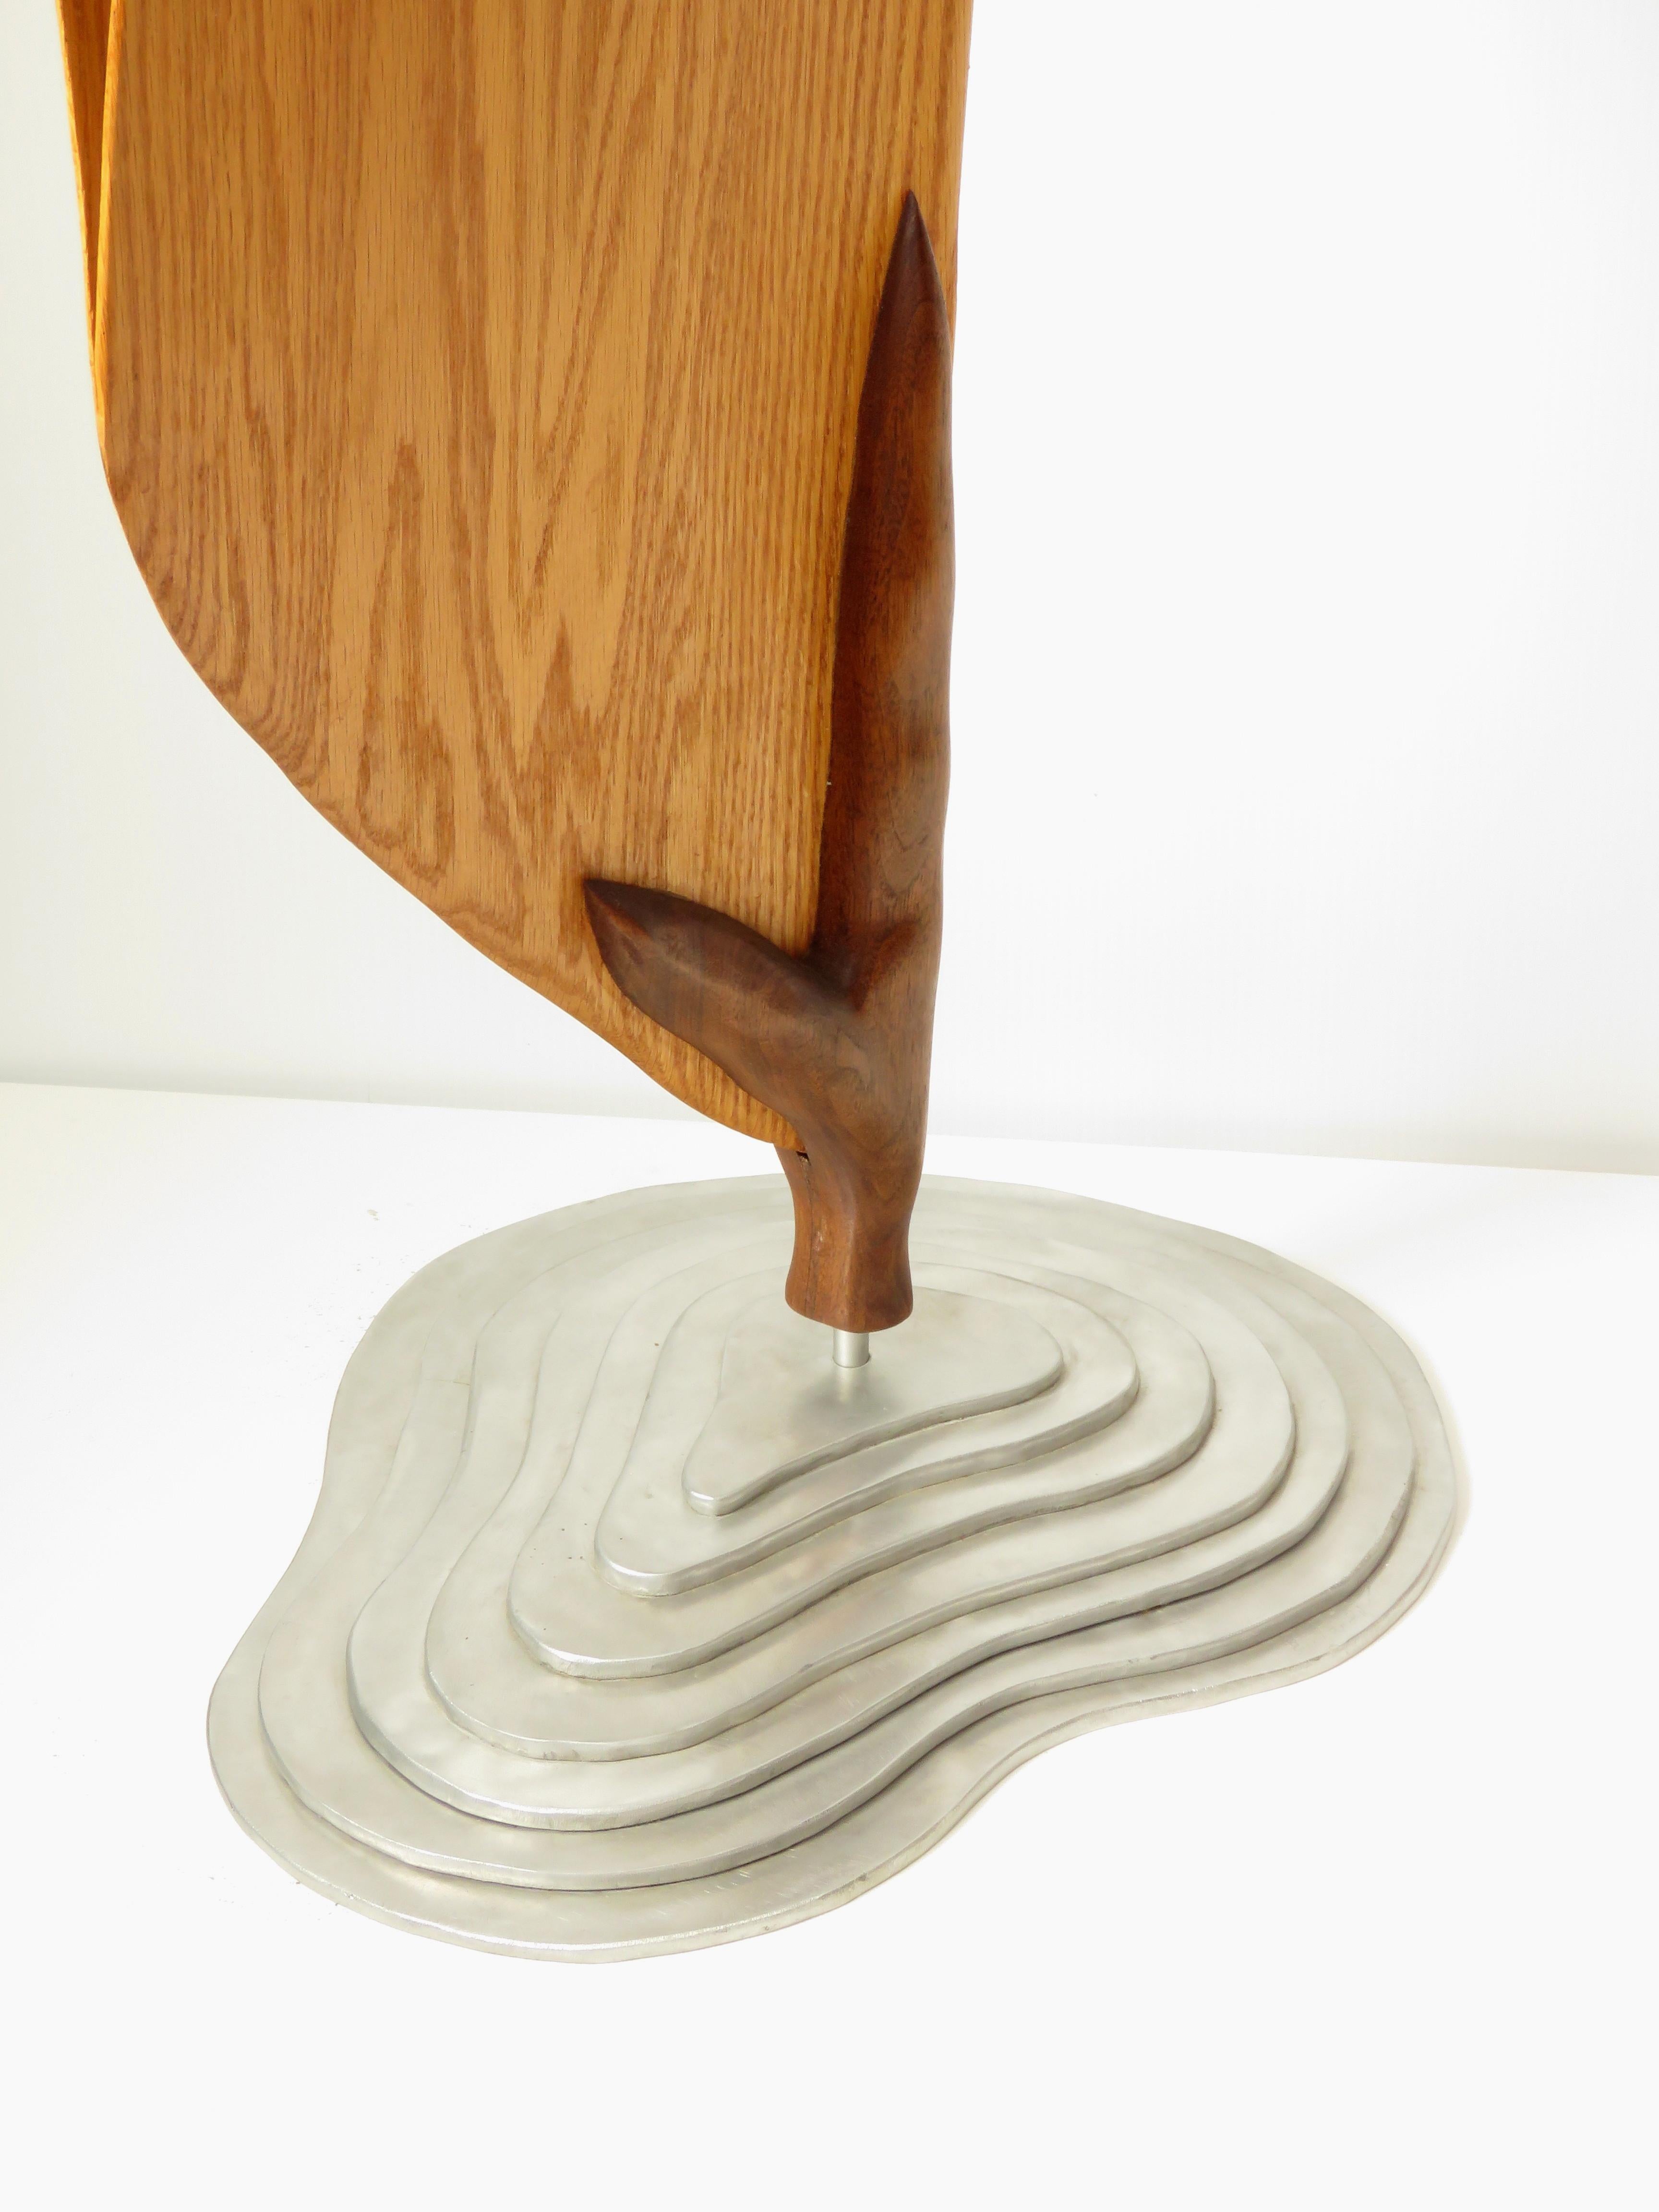 Cocoon (Holz rote Eiche Vogel abstrakte Kunst zen Skulptur Sockel minimal Erbse Schote) – Sculpture von Eric Tardif